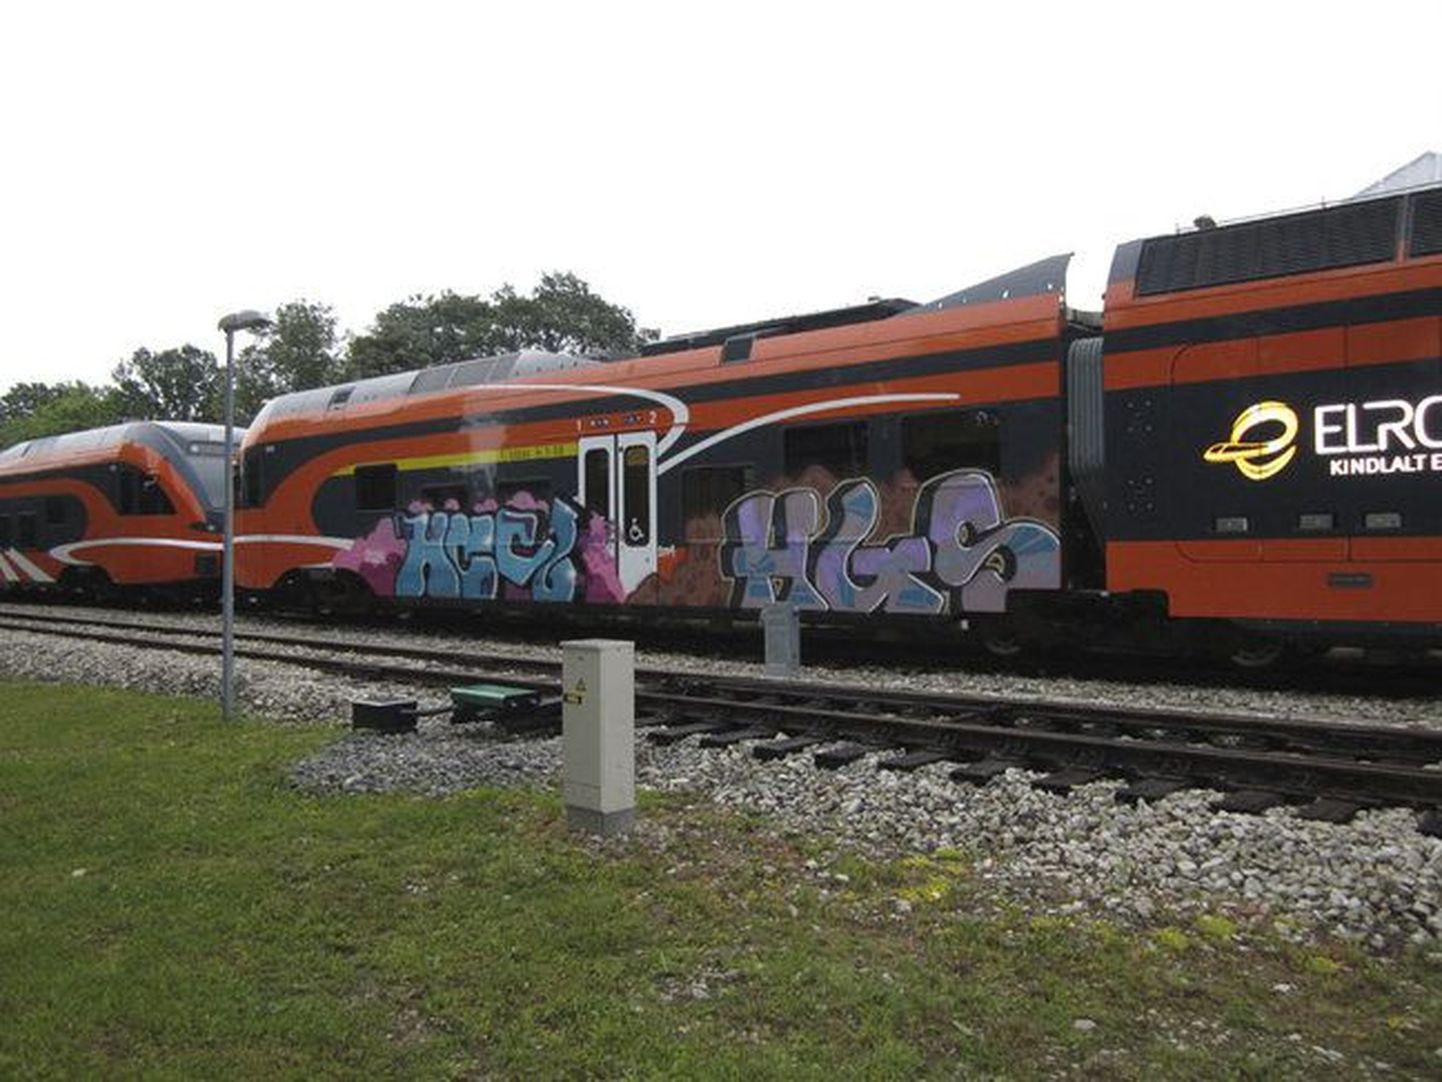 В Вильянди хулиганы изрисовали поезд Elron.